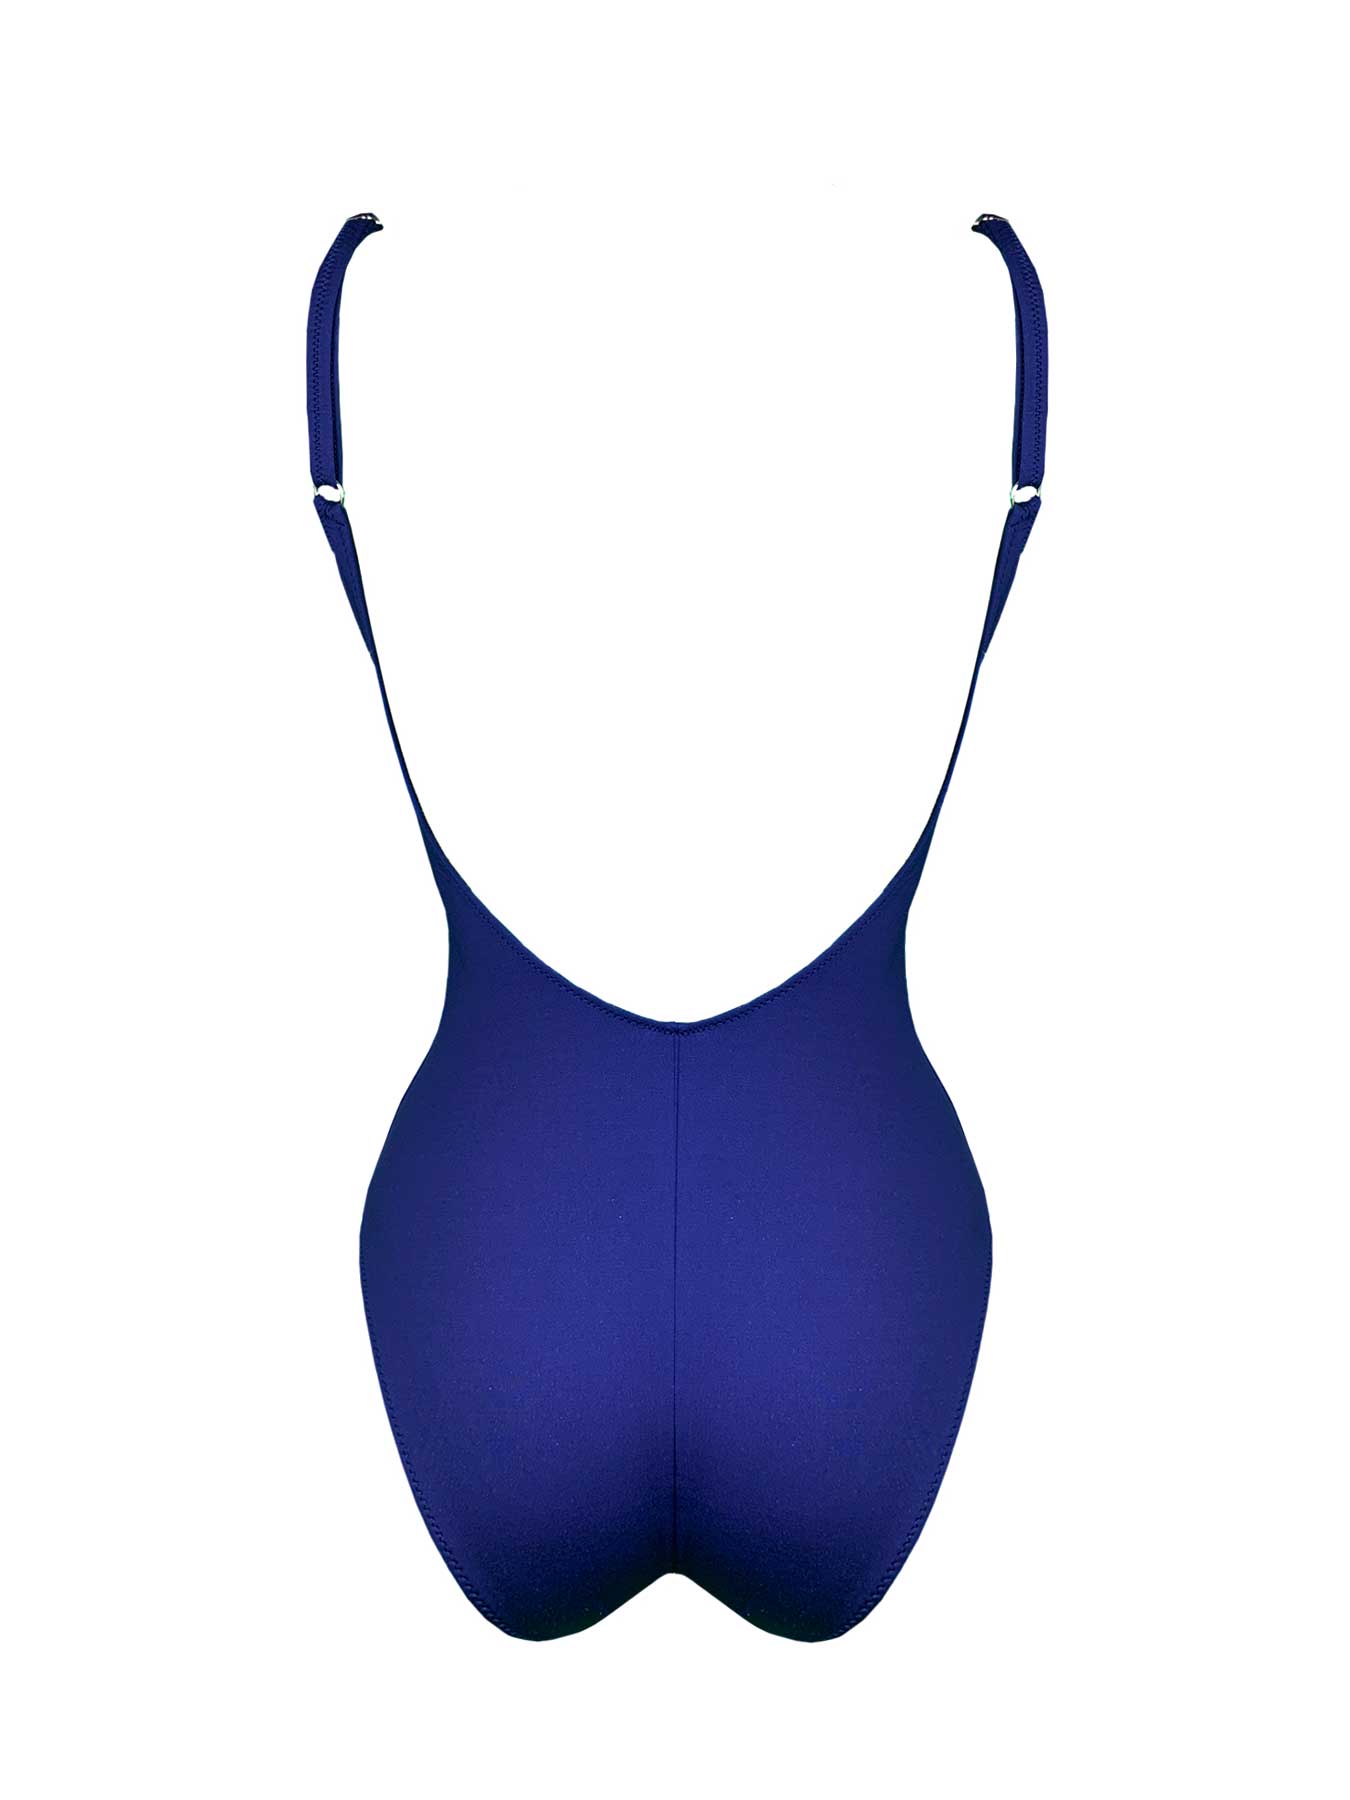 Intero Tricolore Treccia Marette - Bikini D'amare Riccione